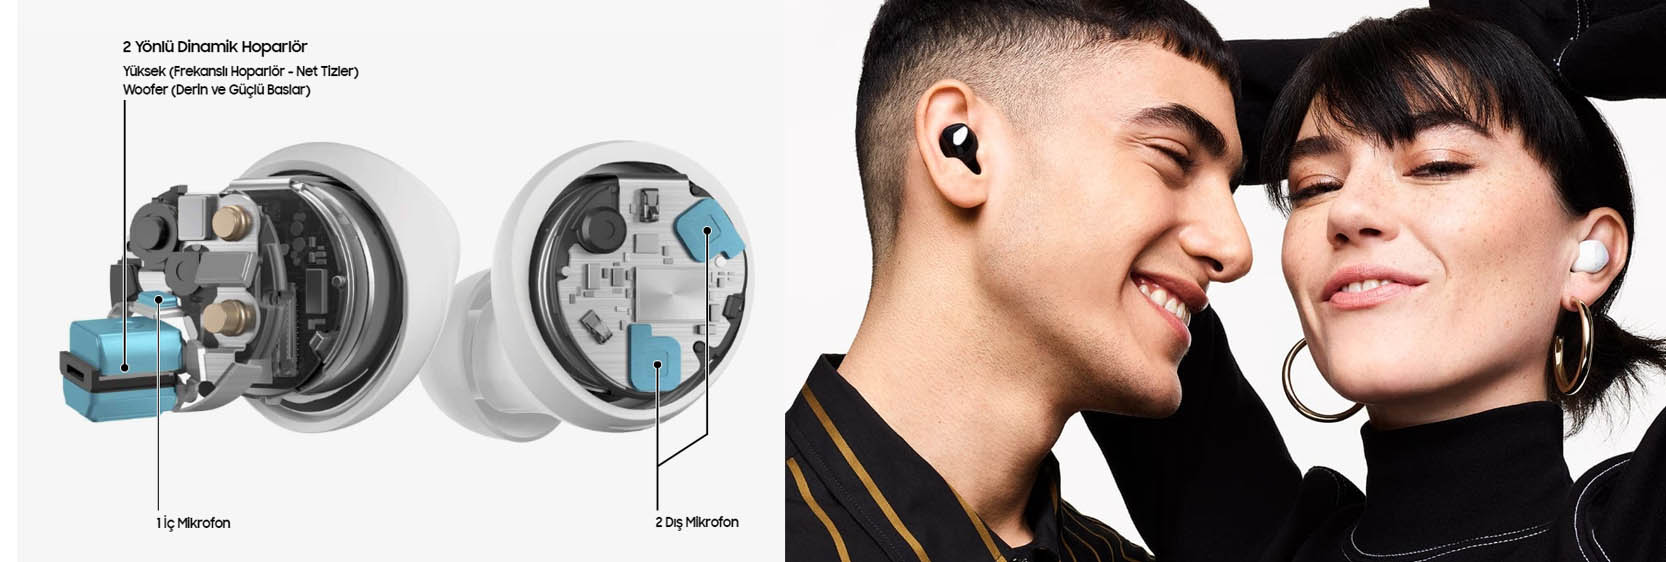 SAMSUNG GALAXY BUDS PLUS Ses deneyiminizi değiştiren kulaklık.   Karşınızda Galaxy Buds+. Zengin tizler ve derin baslarla AKG ses kalitesi sunan 2 yönlü hoparlörler, kristal netliğinde telefon görüşmeleri için uyum sağlayan 3 mikrofonlu sistem ve uzun ömürlü piliyle seçkin bir dinleme deneyimi sağlayan ilk kablosuz kulaklığımız.